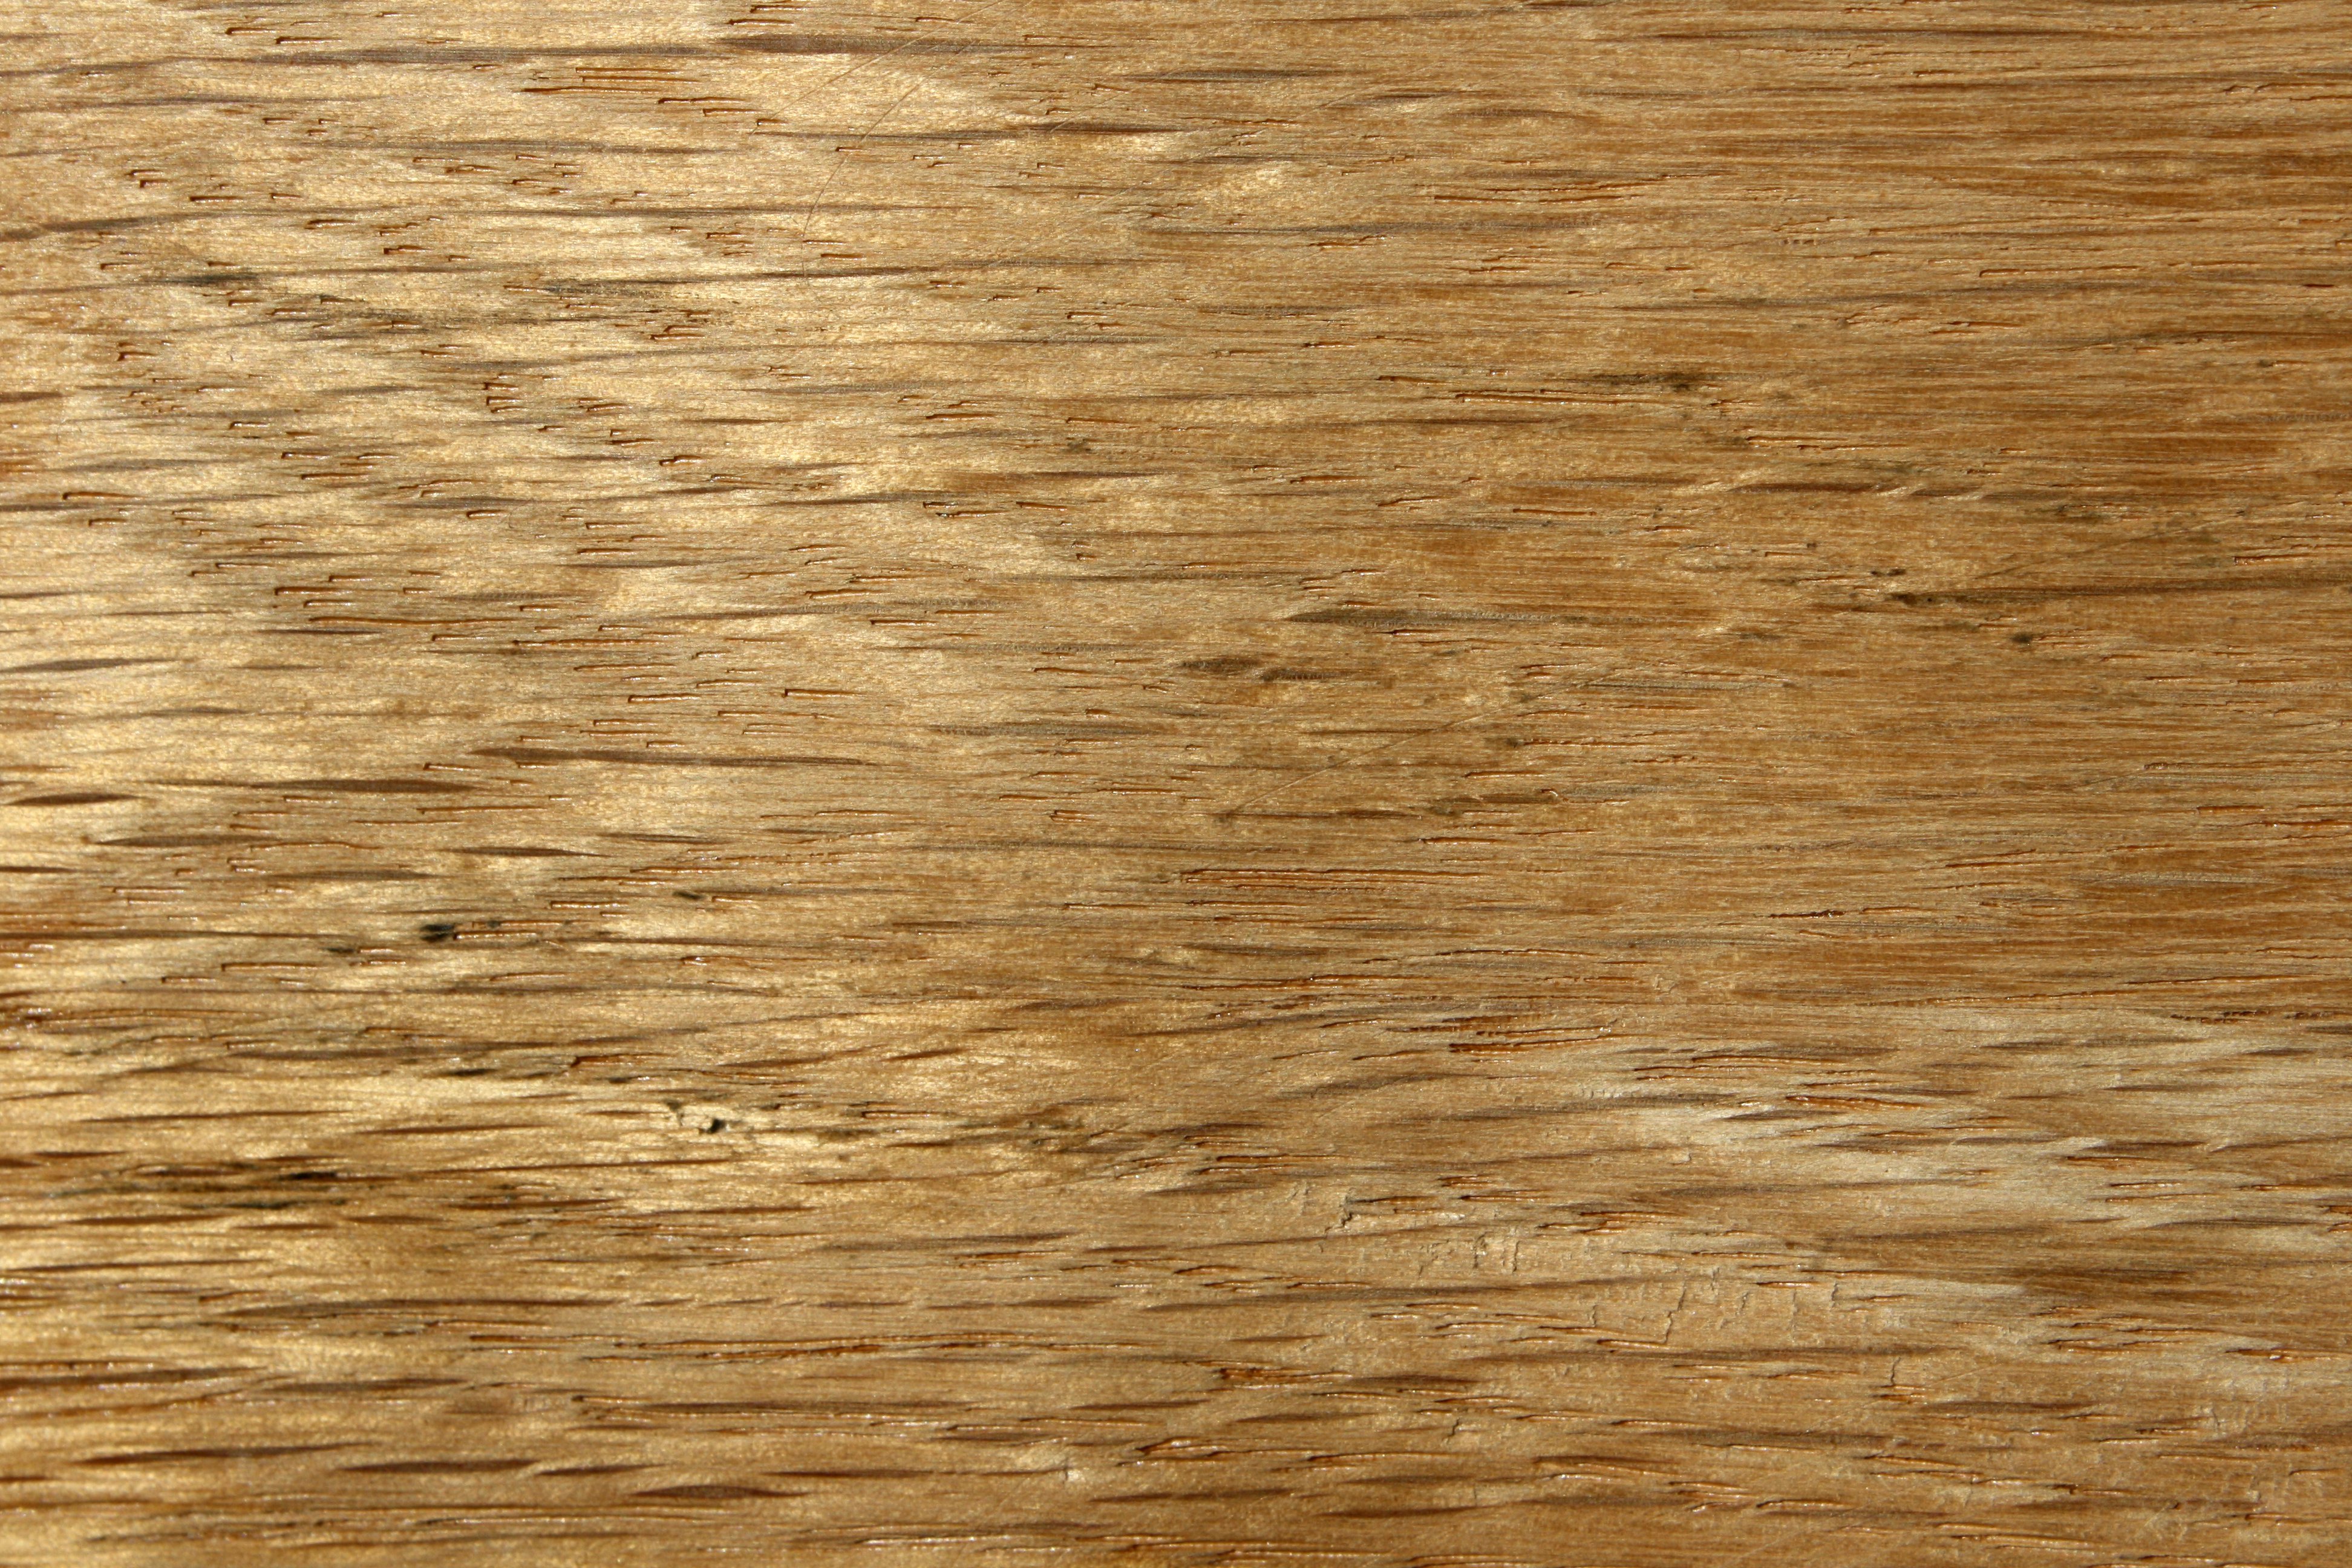 Oak Wood Grain Texture Close Up Picture Free Photograph Photos